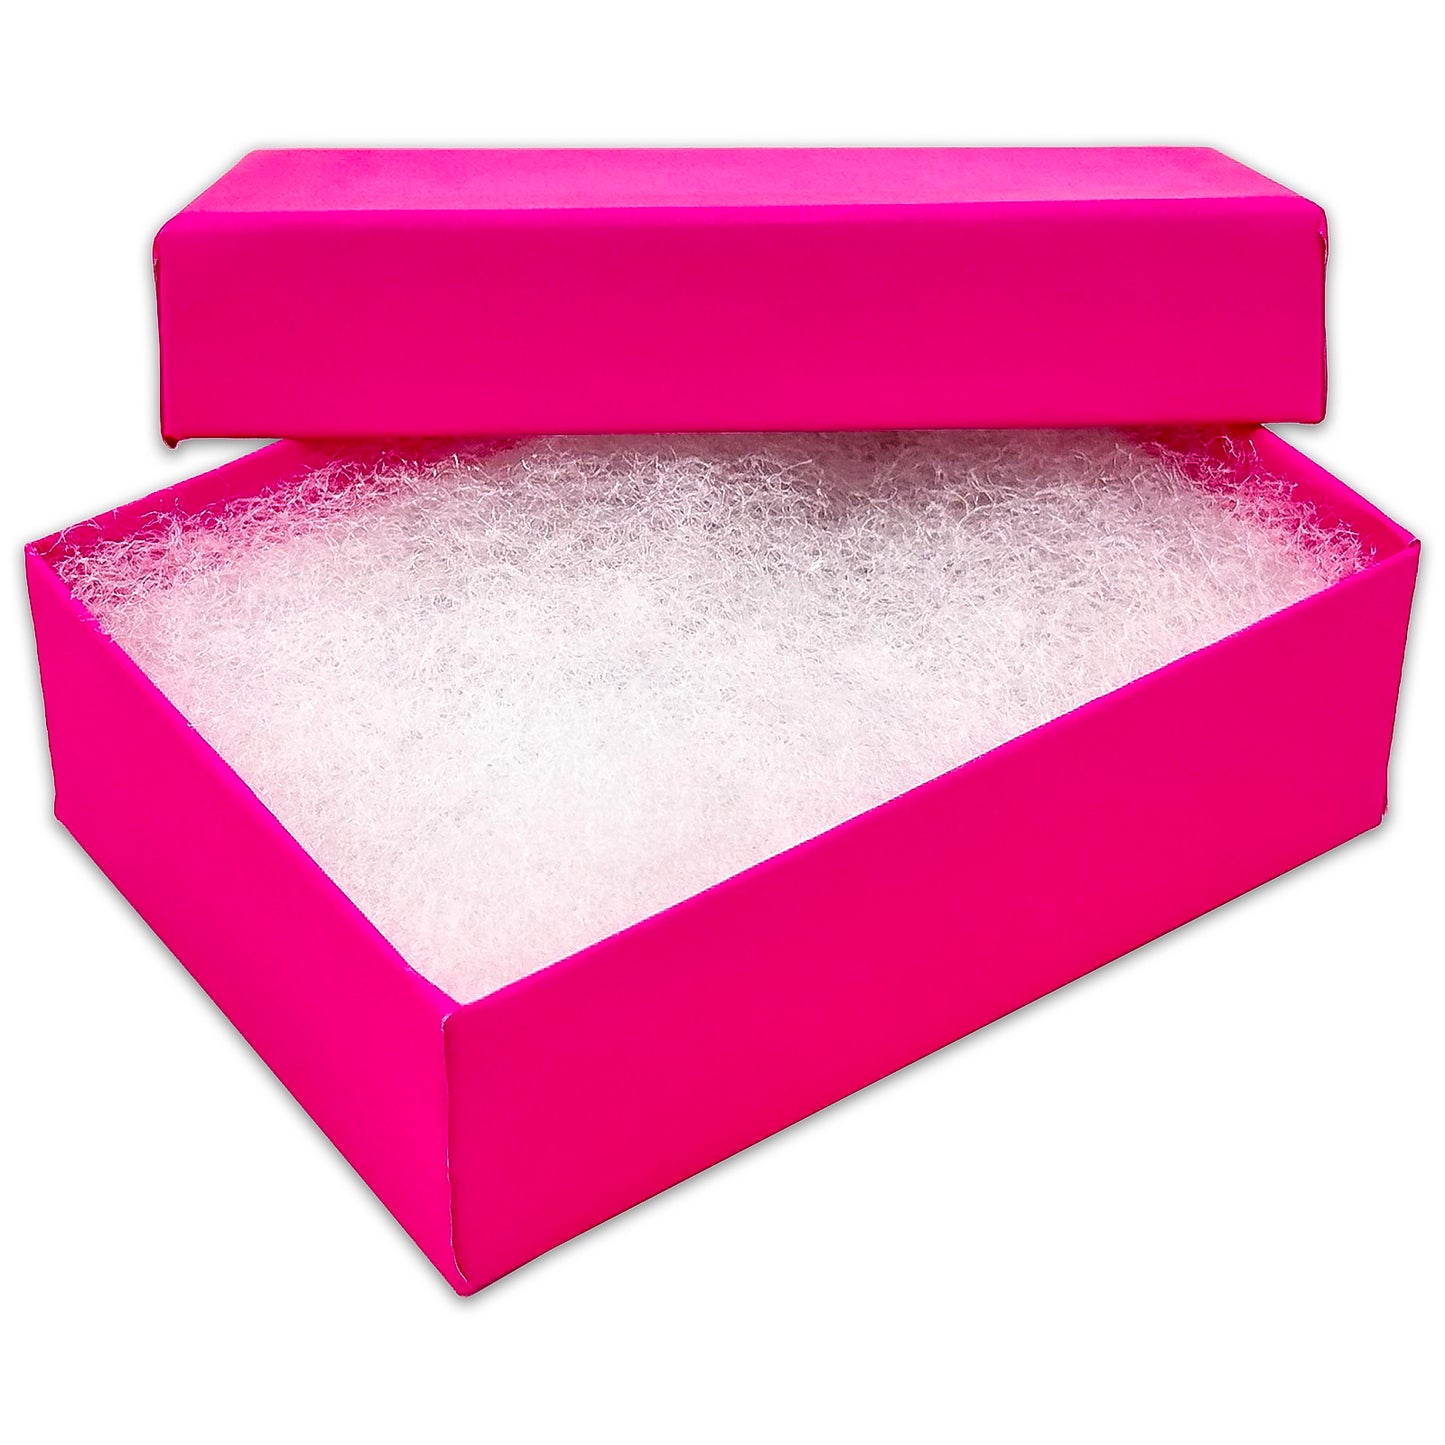 3 1/4" x 2 1/4" x 1" Neon Fuchsia Cotton Filled Paper Box